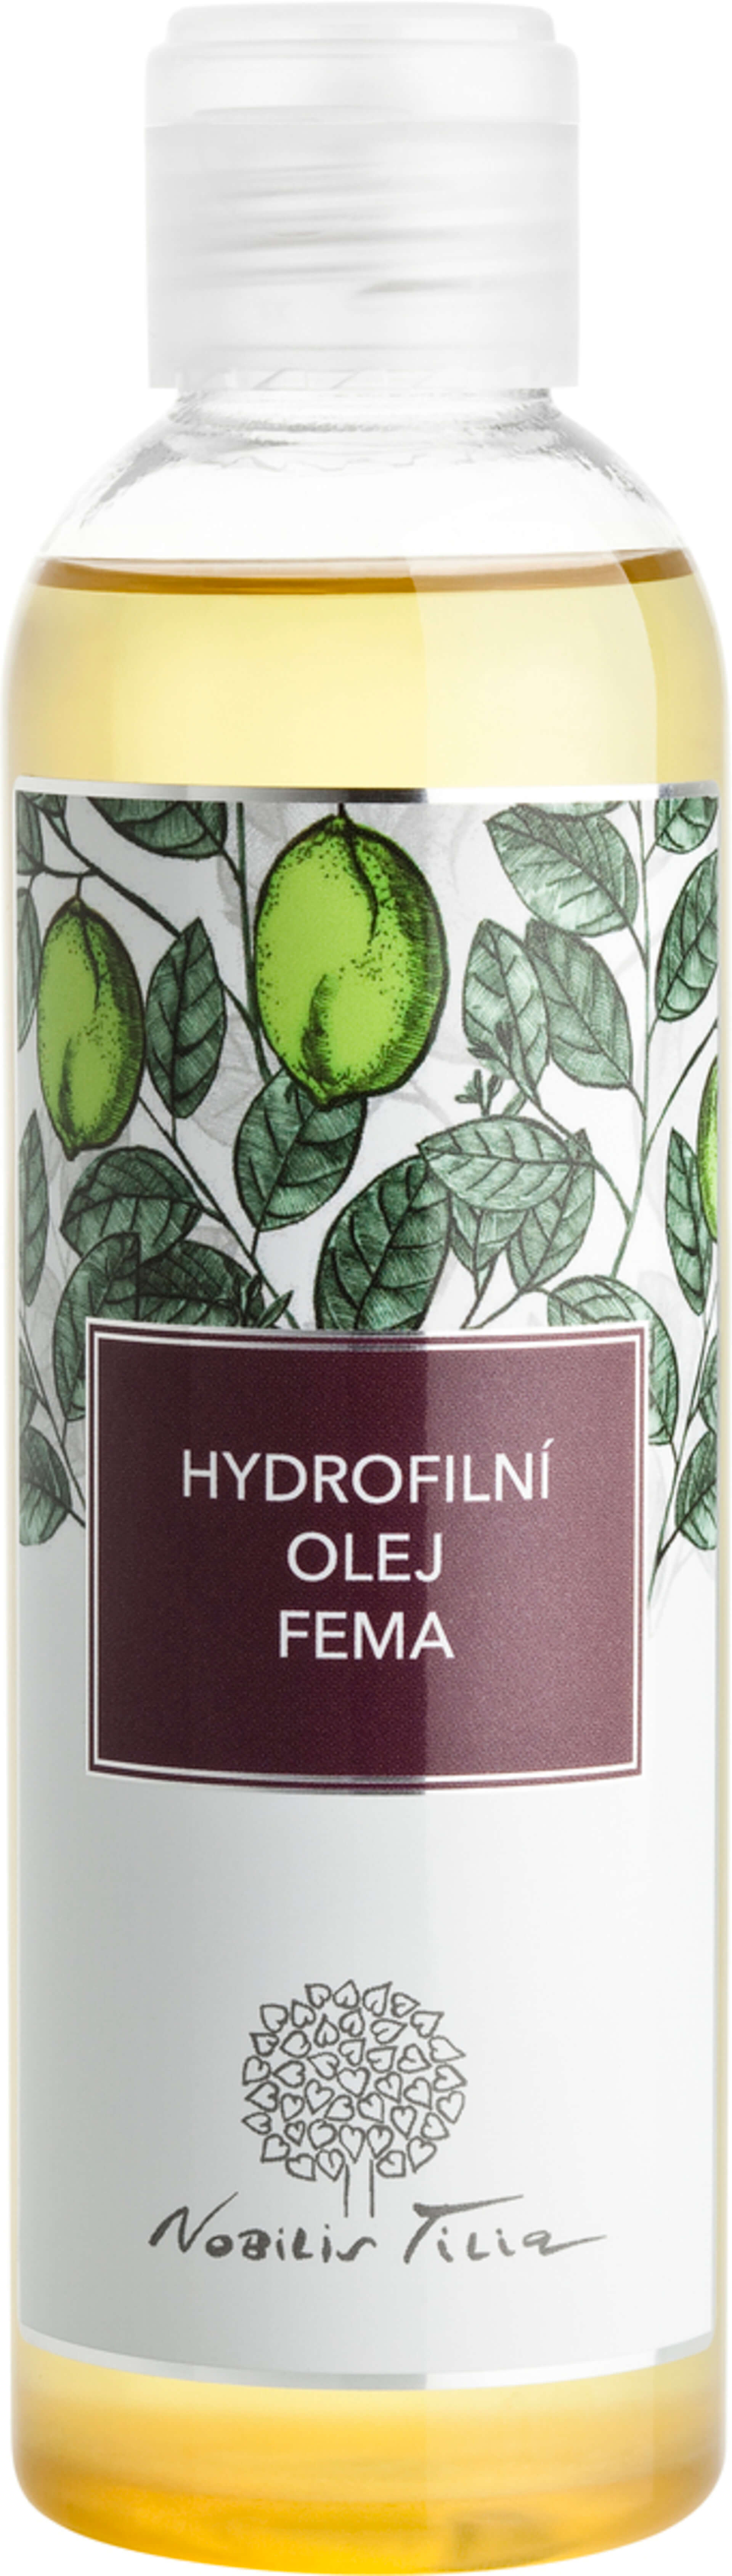 E-shop Nobilis Tilia Hydrofilný olej Fema 200 ml